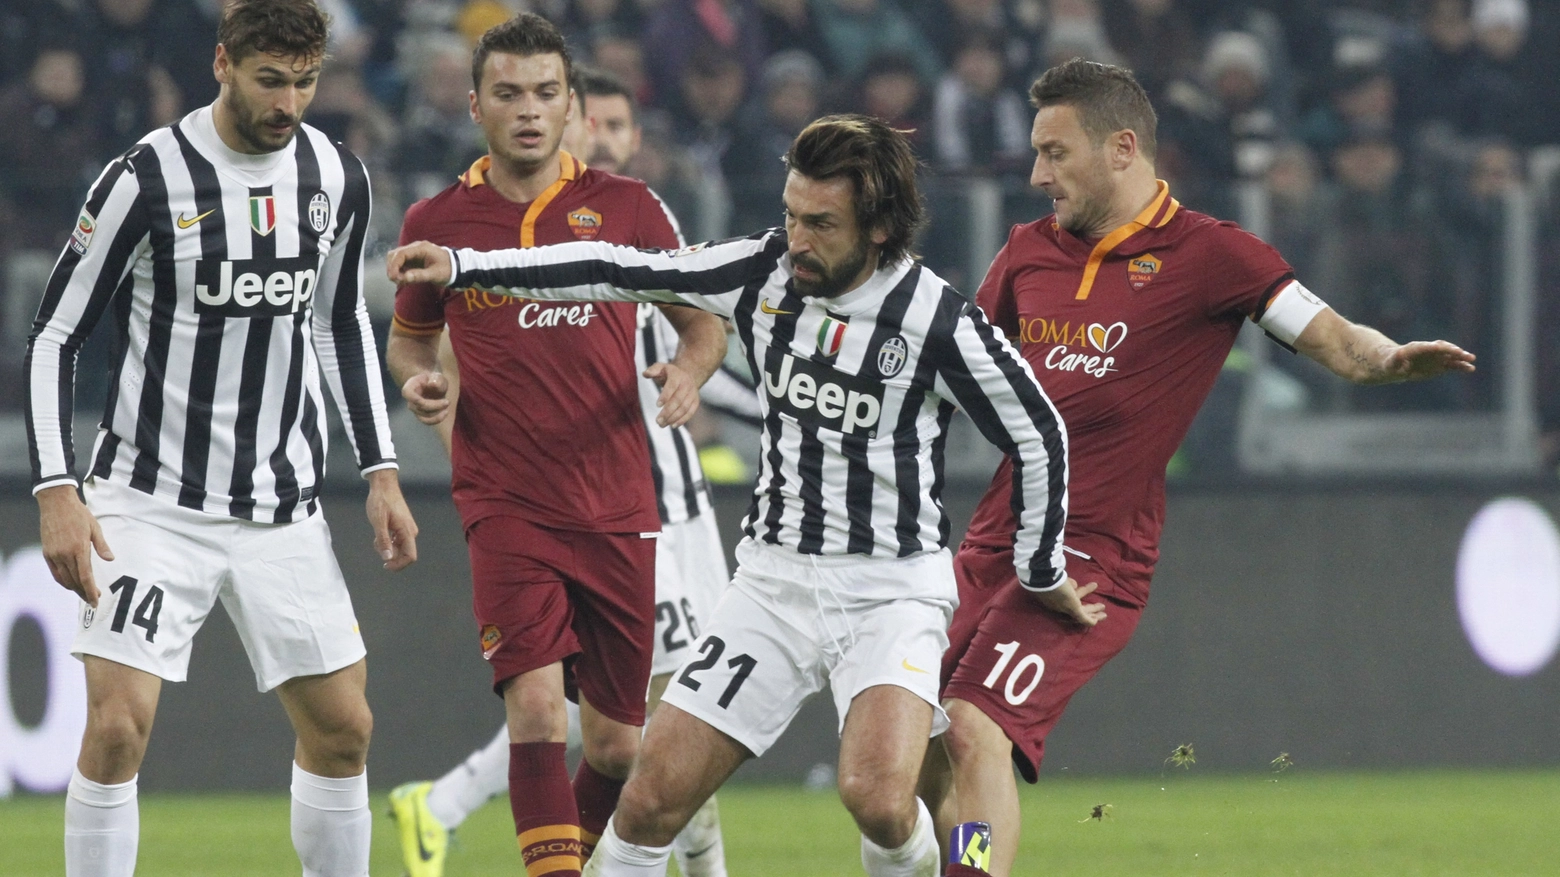 Pirlo e Totti, leader di Juventus e Roma (Newpress)